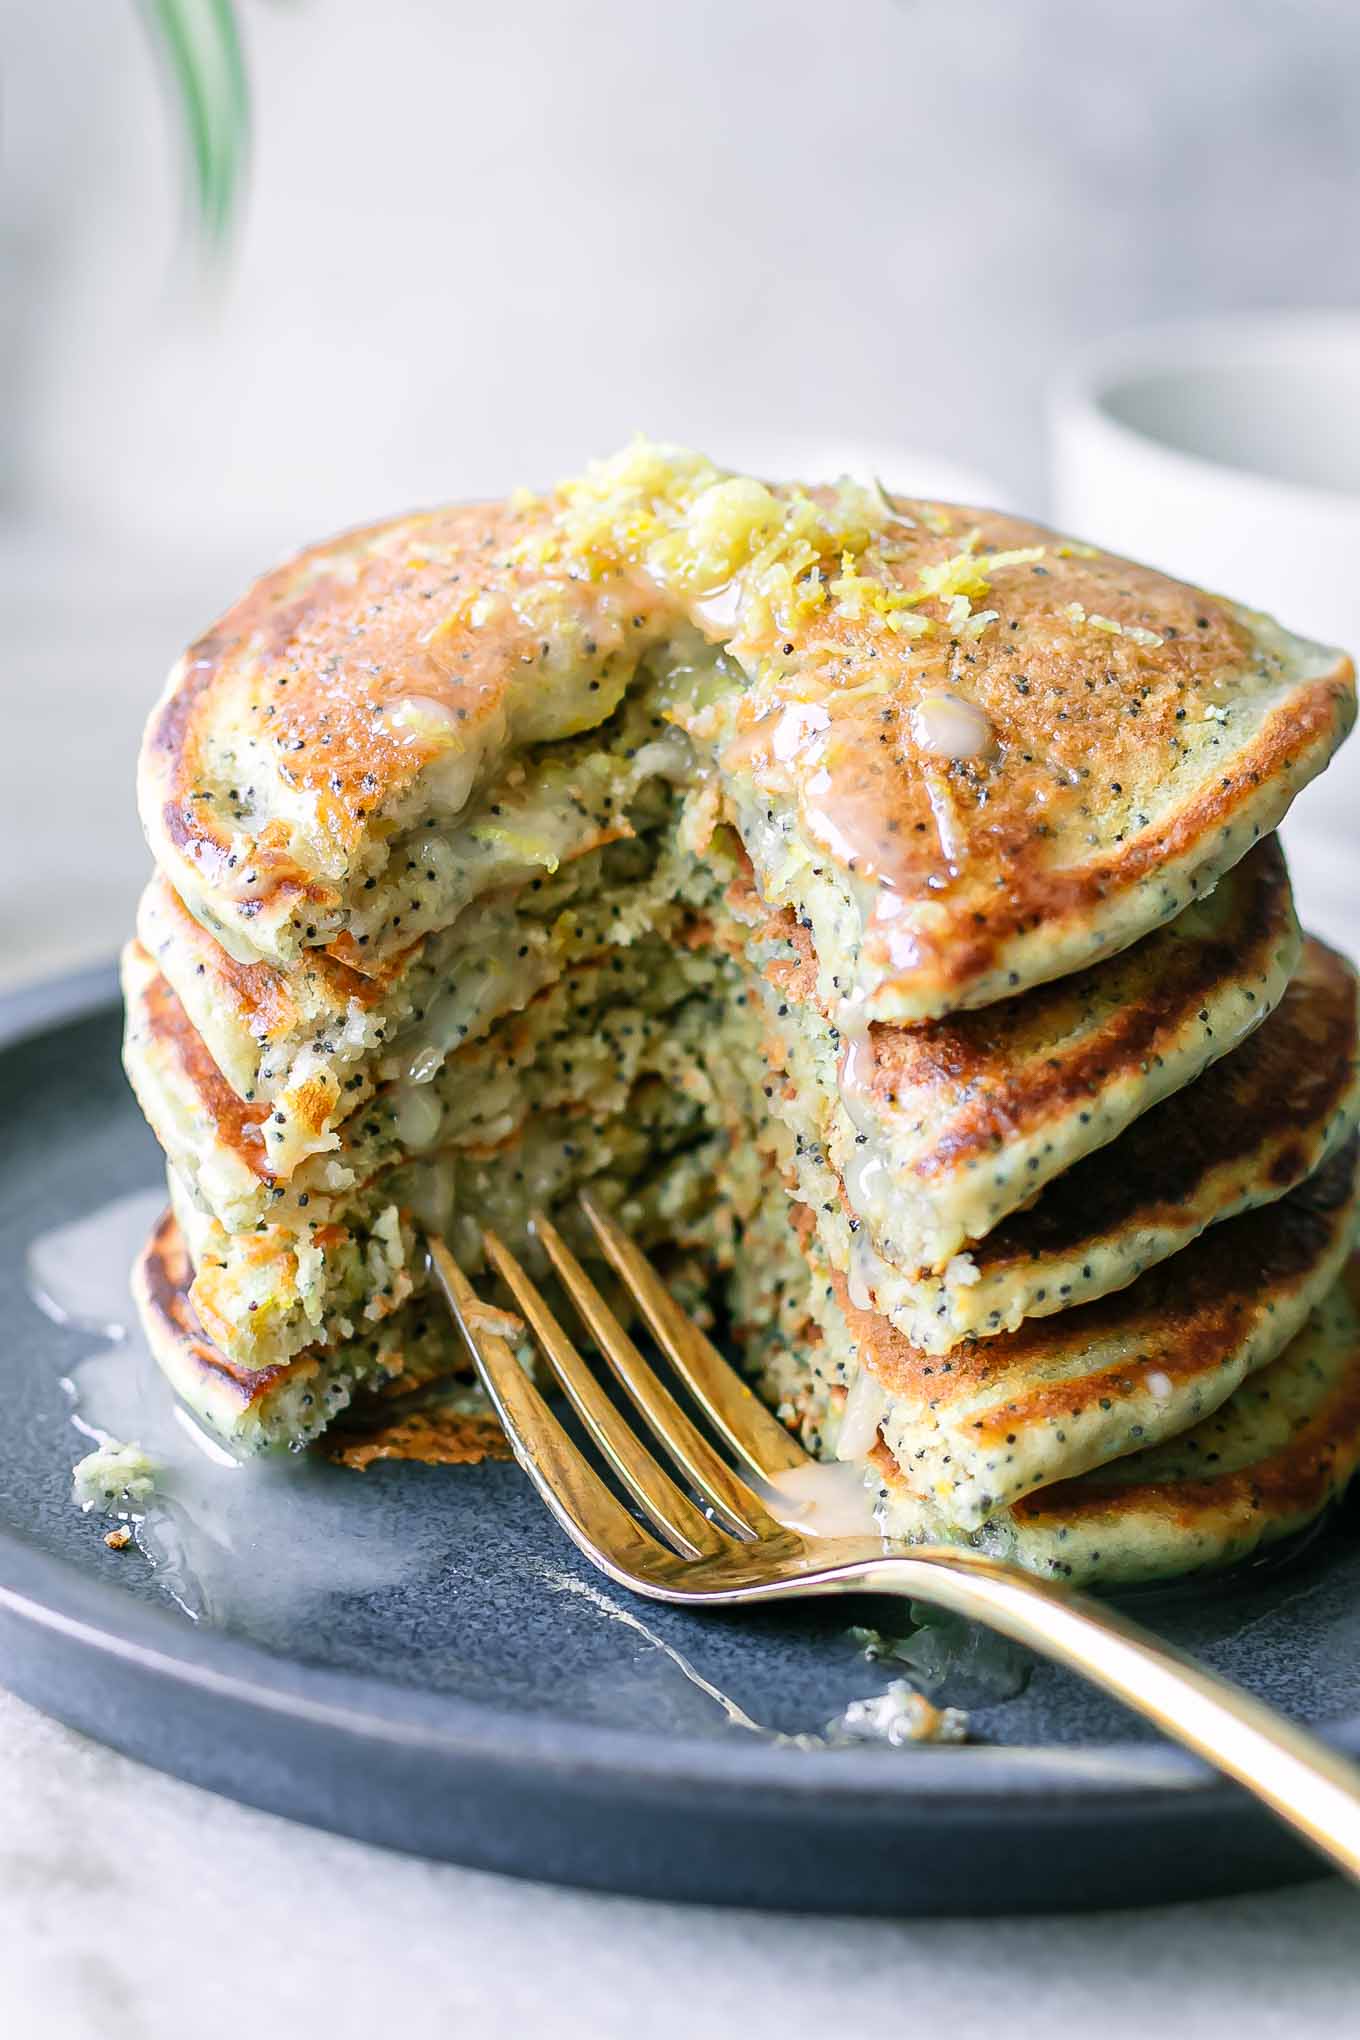 Vegan Lemon Poppyseed Pancakes